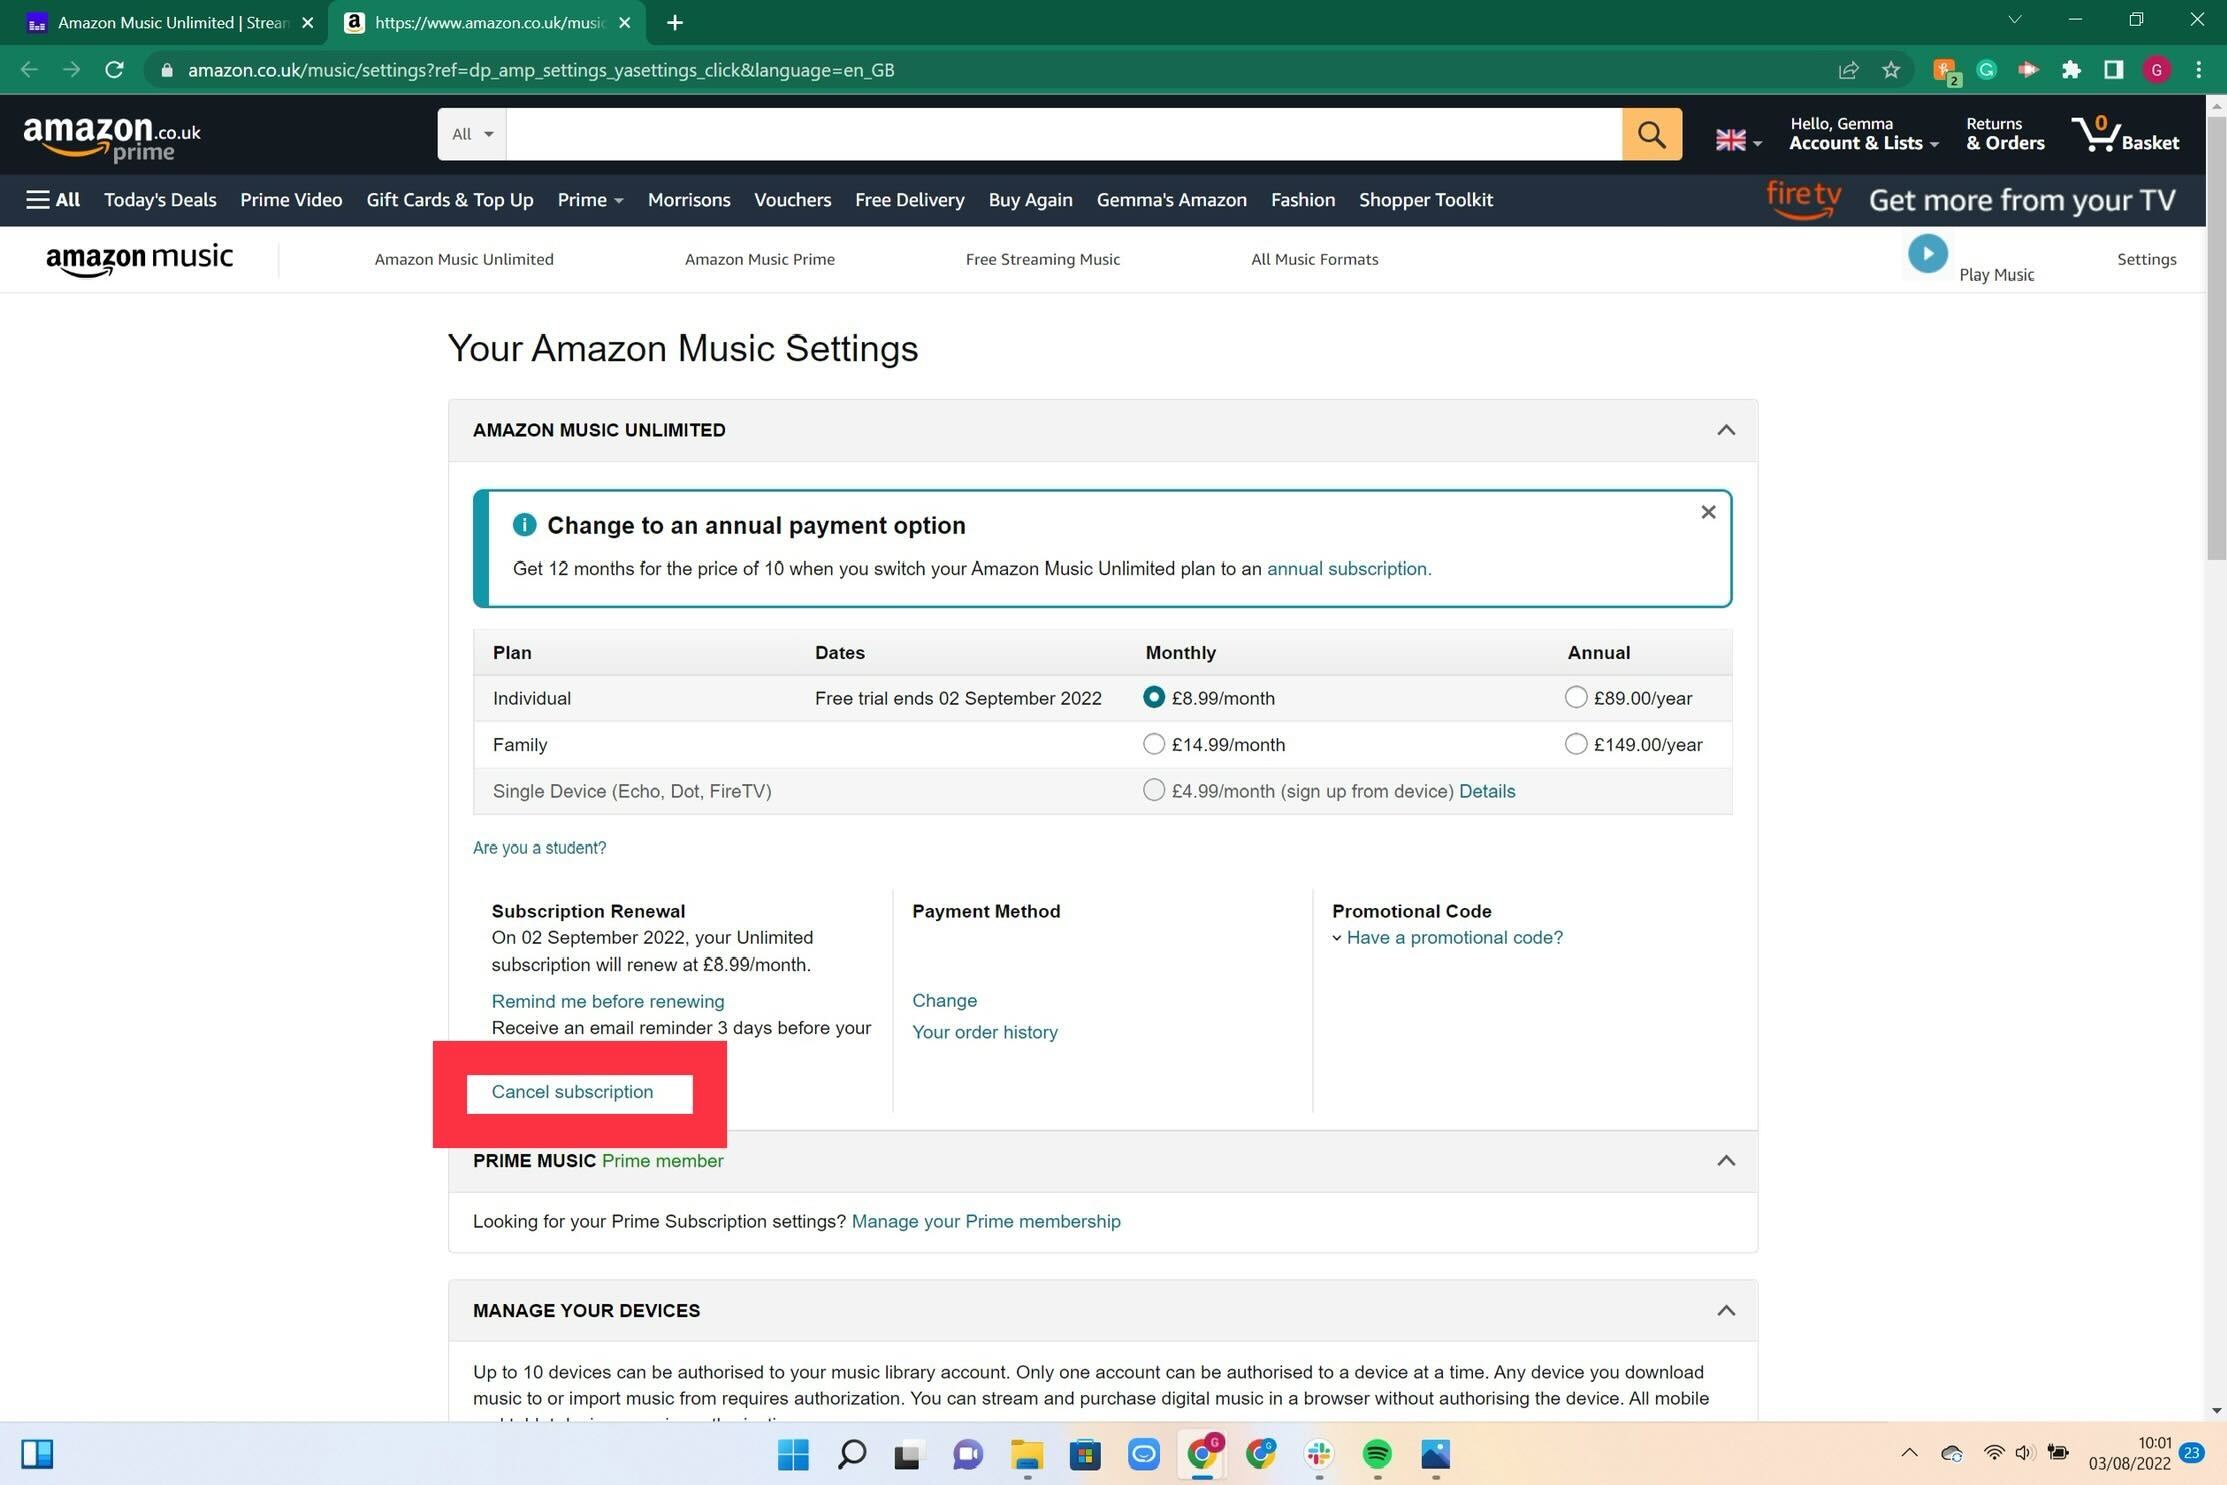 Les options de facturation sur Amazon Music Unlimited